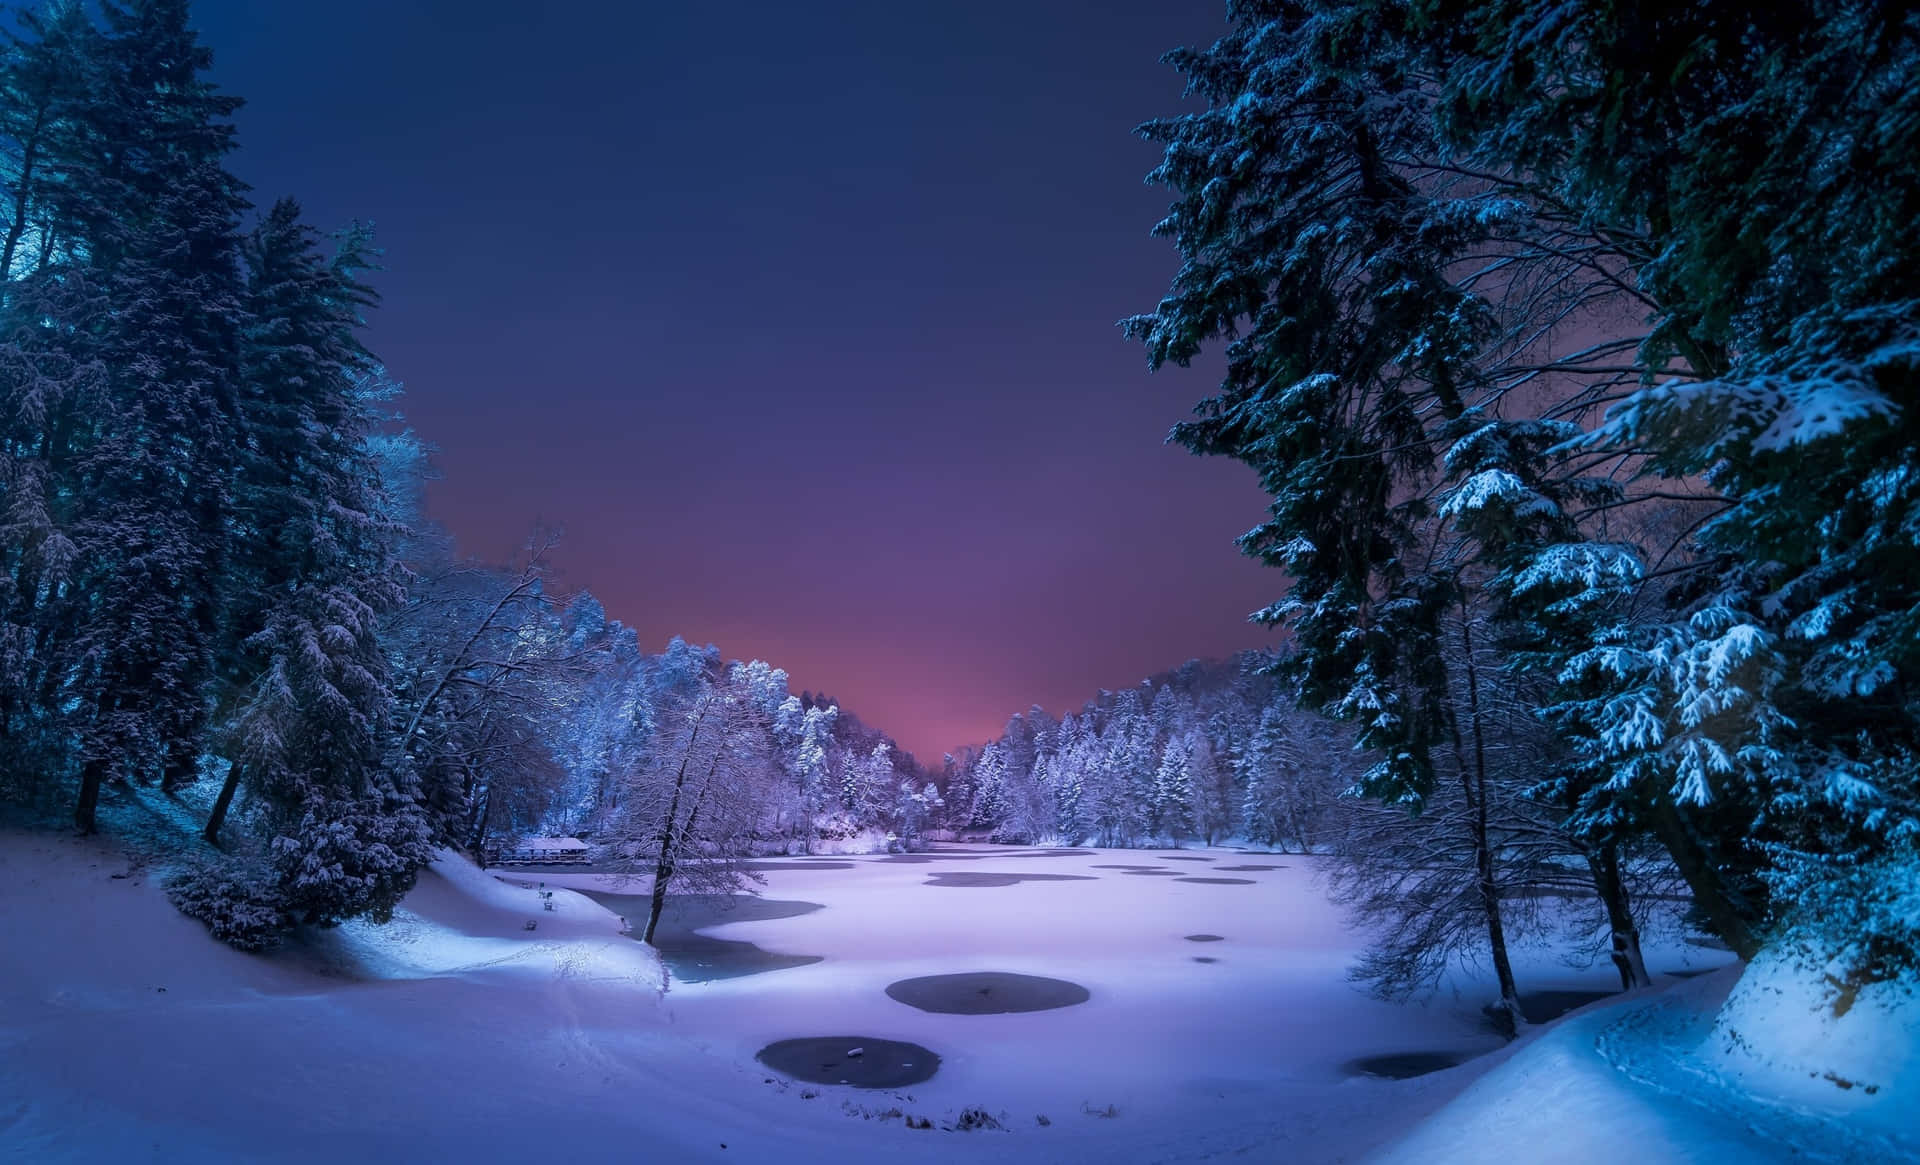 Unlago Cubierto De Nieve Durante La Noche Con Árboles Y Nieve